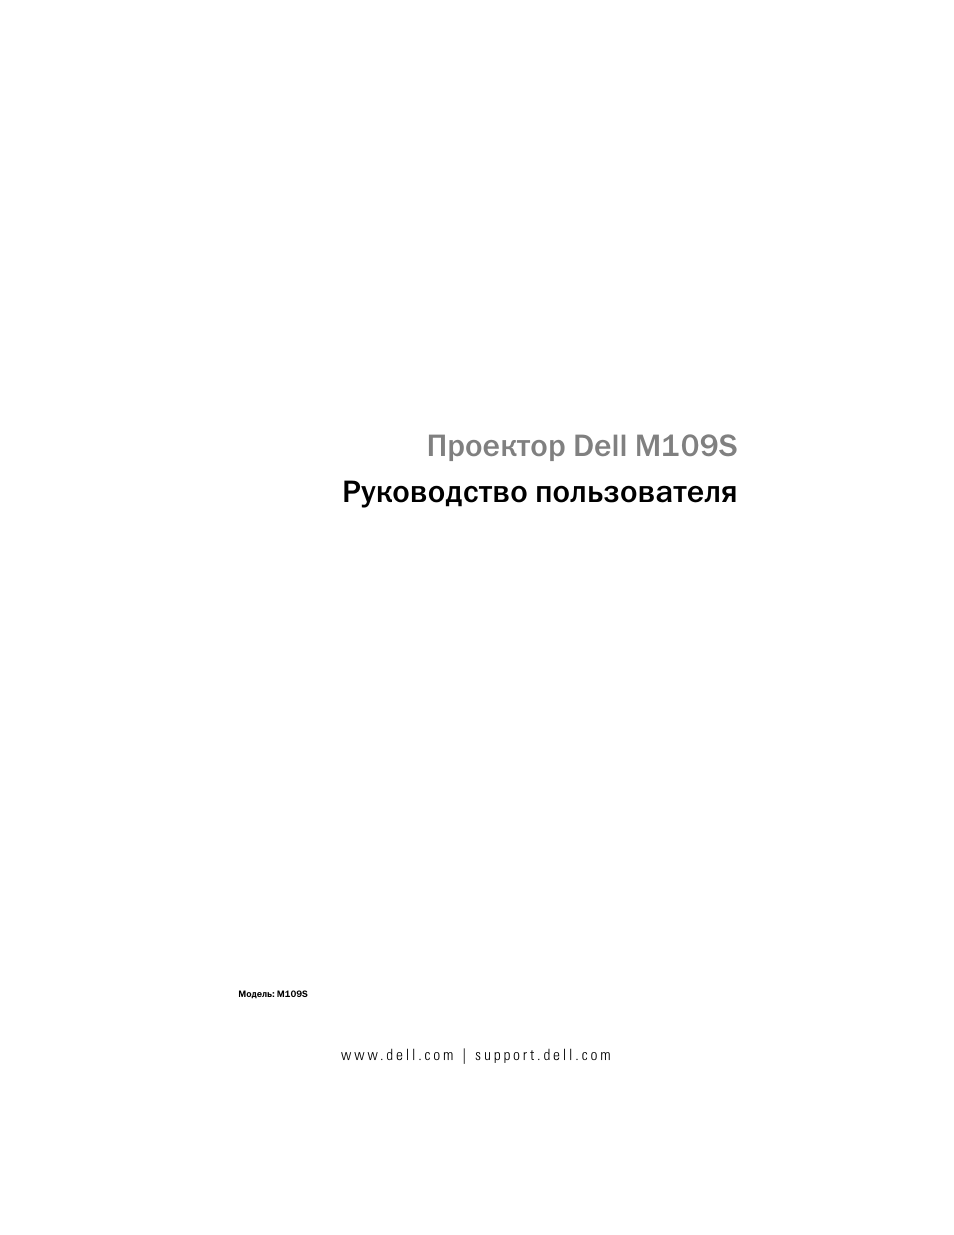 Инструкция по эксплуатации Dell M109S Projector | 34 страницы